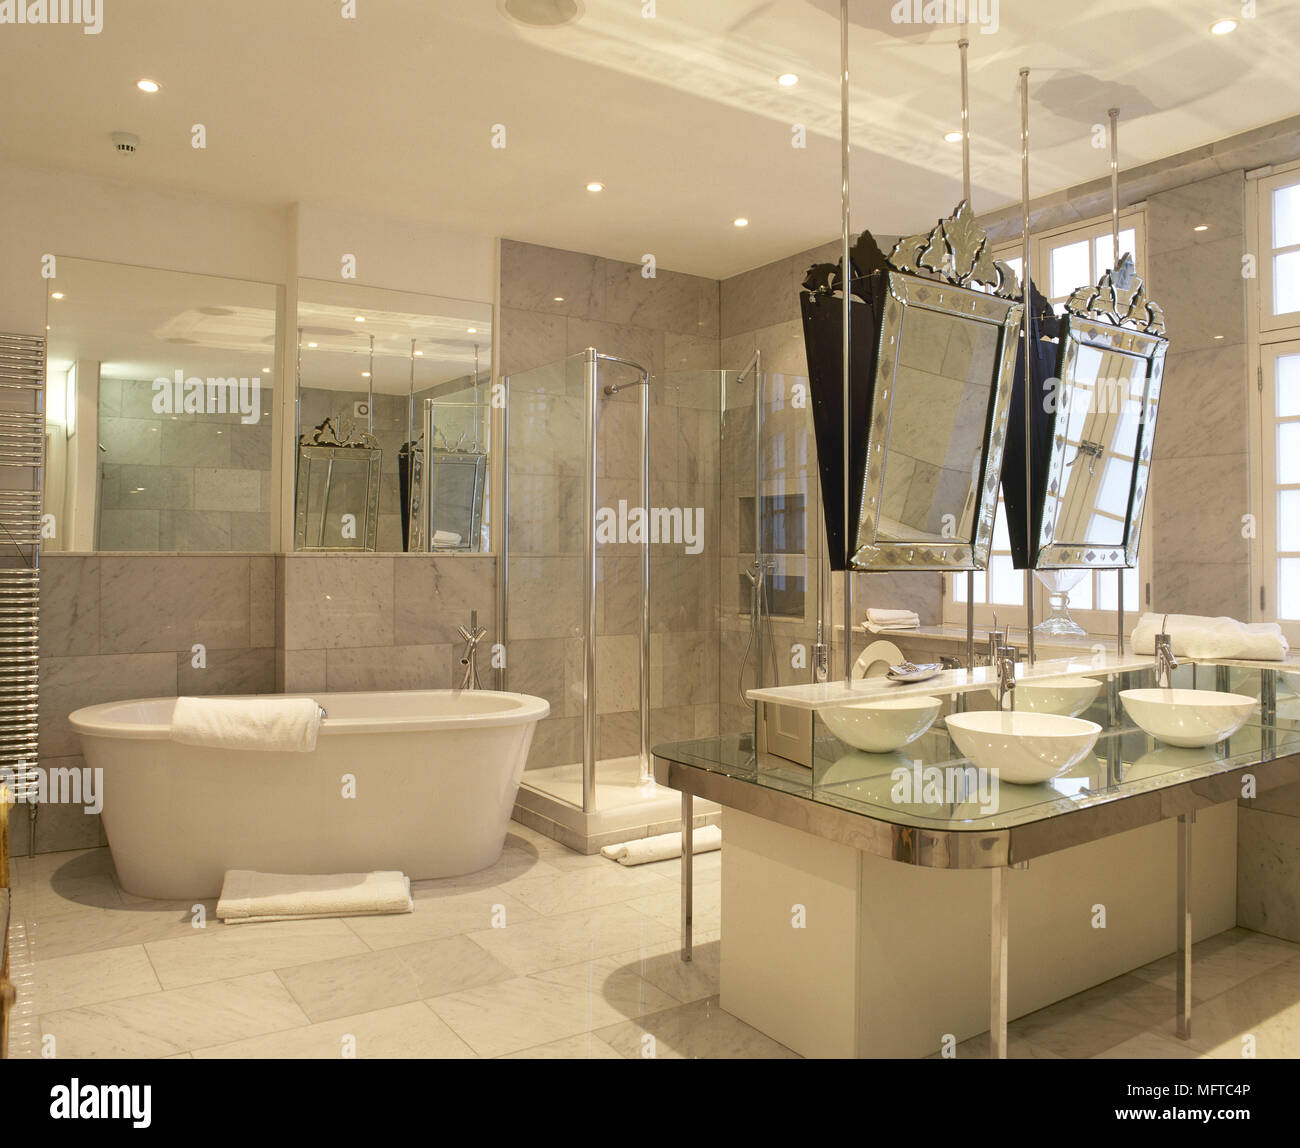 Geräumige, gefliestes Badezimmer mit zwei Waschbecken im Zentrum der Insel,  eine freistehende Badewanne, und verzierten Spiegel Stockfotografie - Alamy